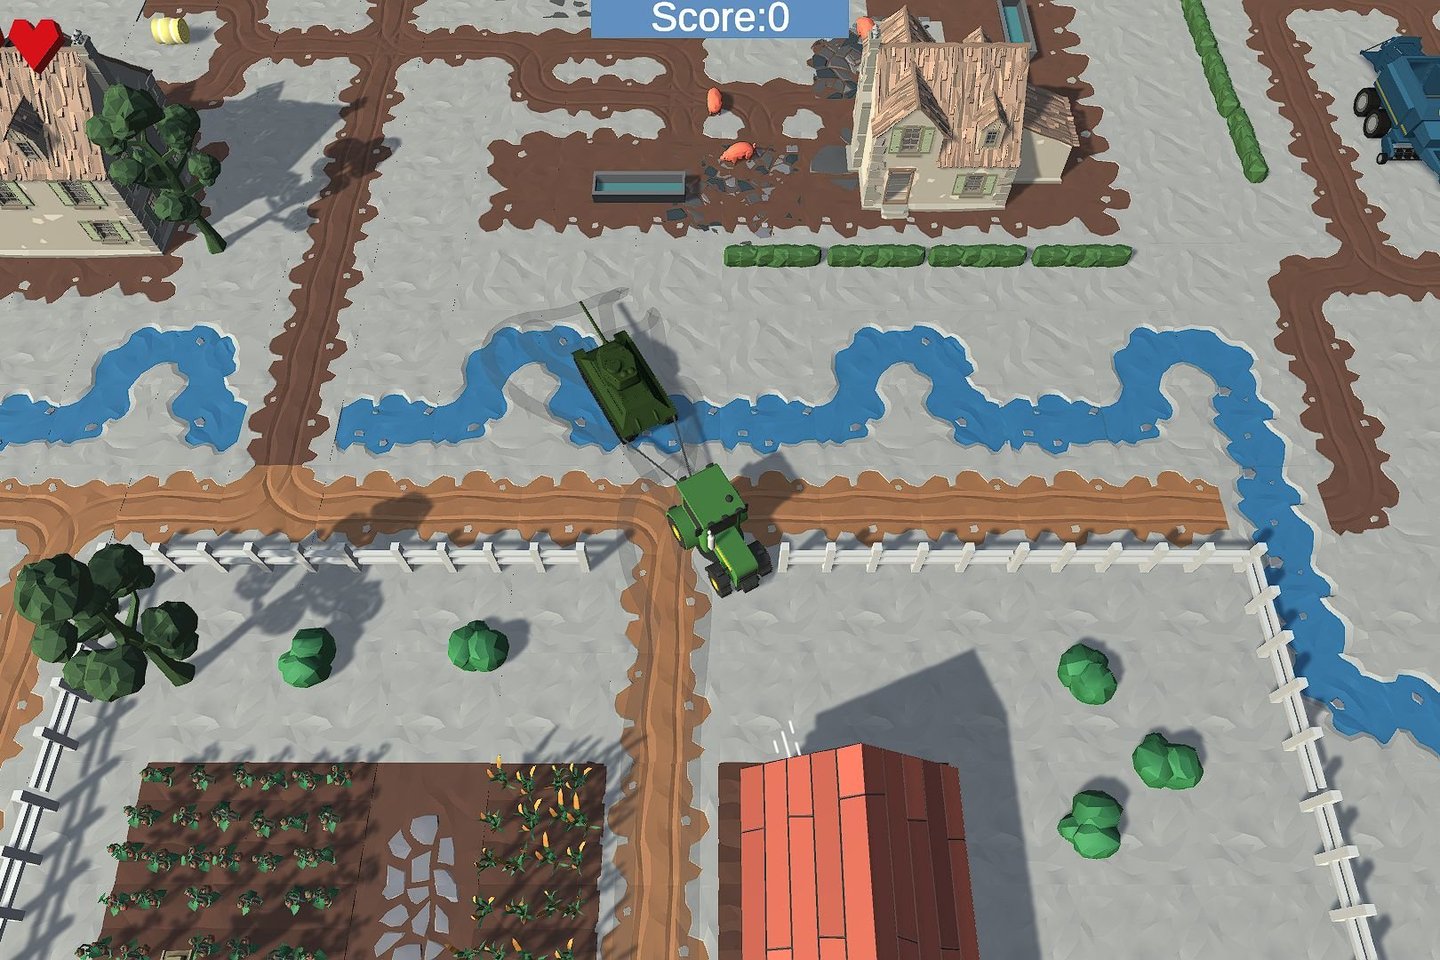  Ukrainiečiai sukūrė žaidimą, kuriame žaidėjai kviečiami traktoriumi nuvilkti kuo daugiau rusų tankų.<br> Žaidimo ekrano nuotr.